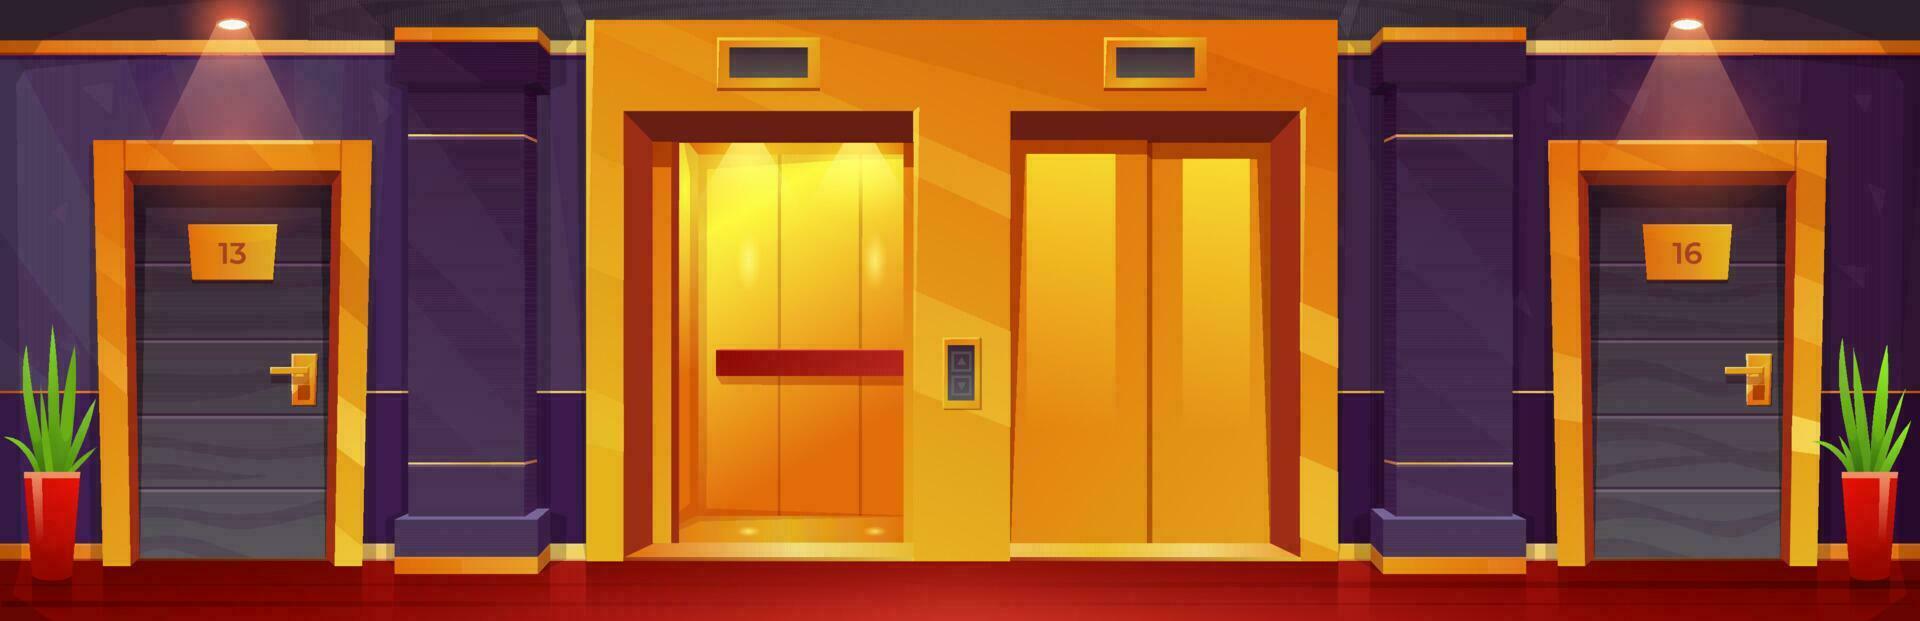 desenho animado luxo hotel chão com dourado elevadores vetor